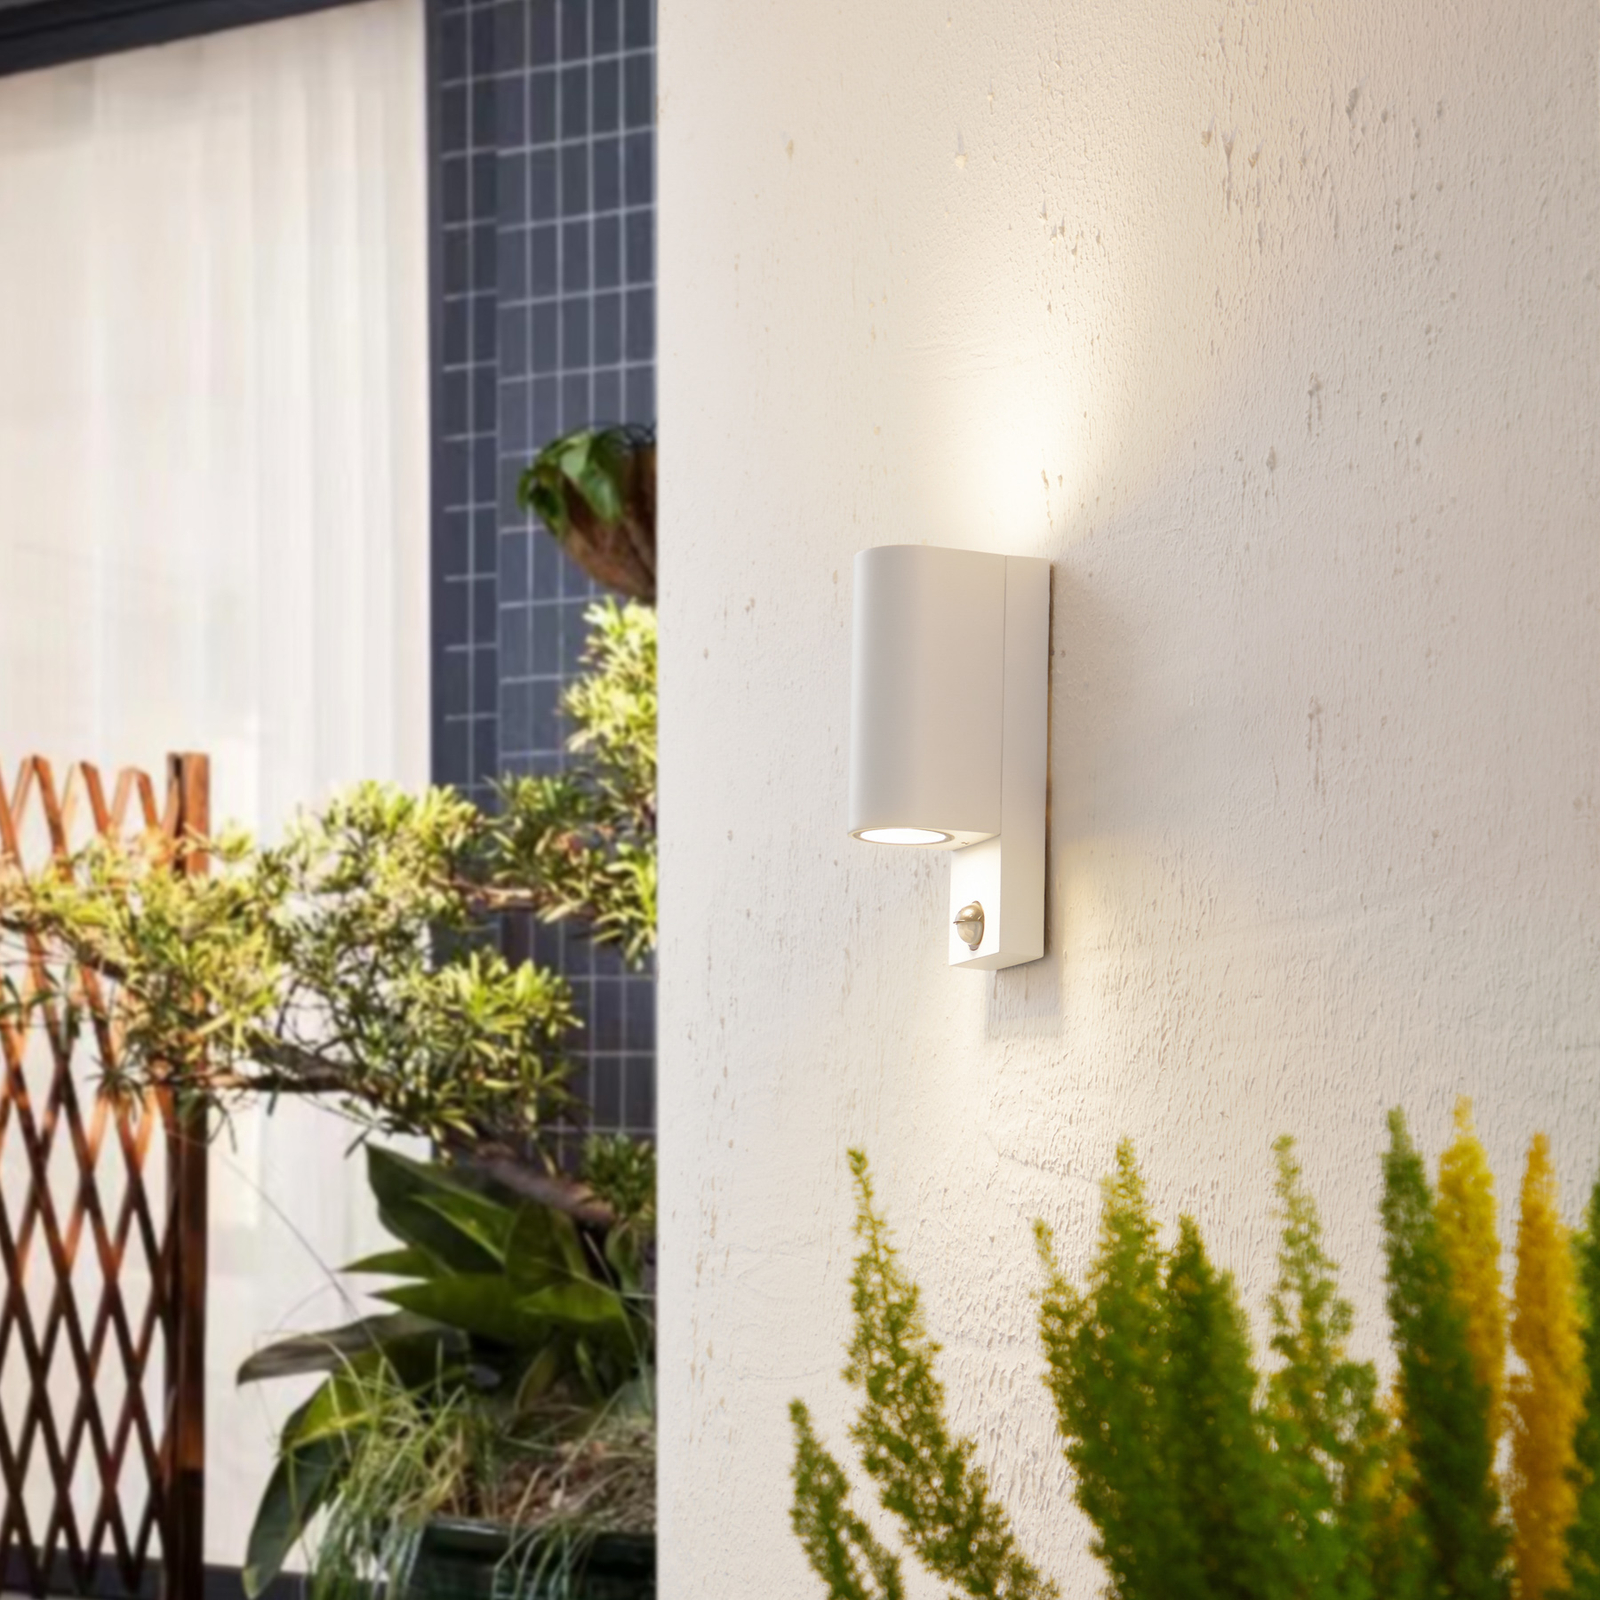 Prios outdoor wall light Tetje, white, round, sensor